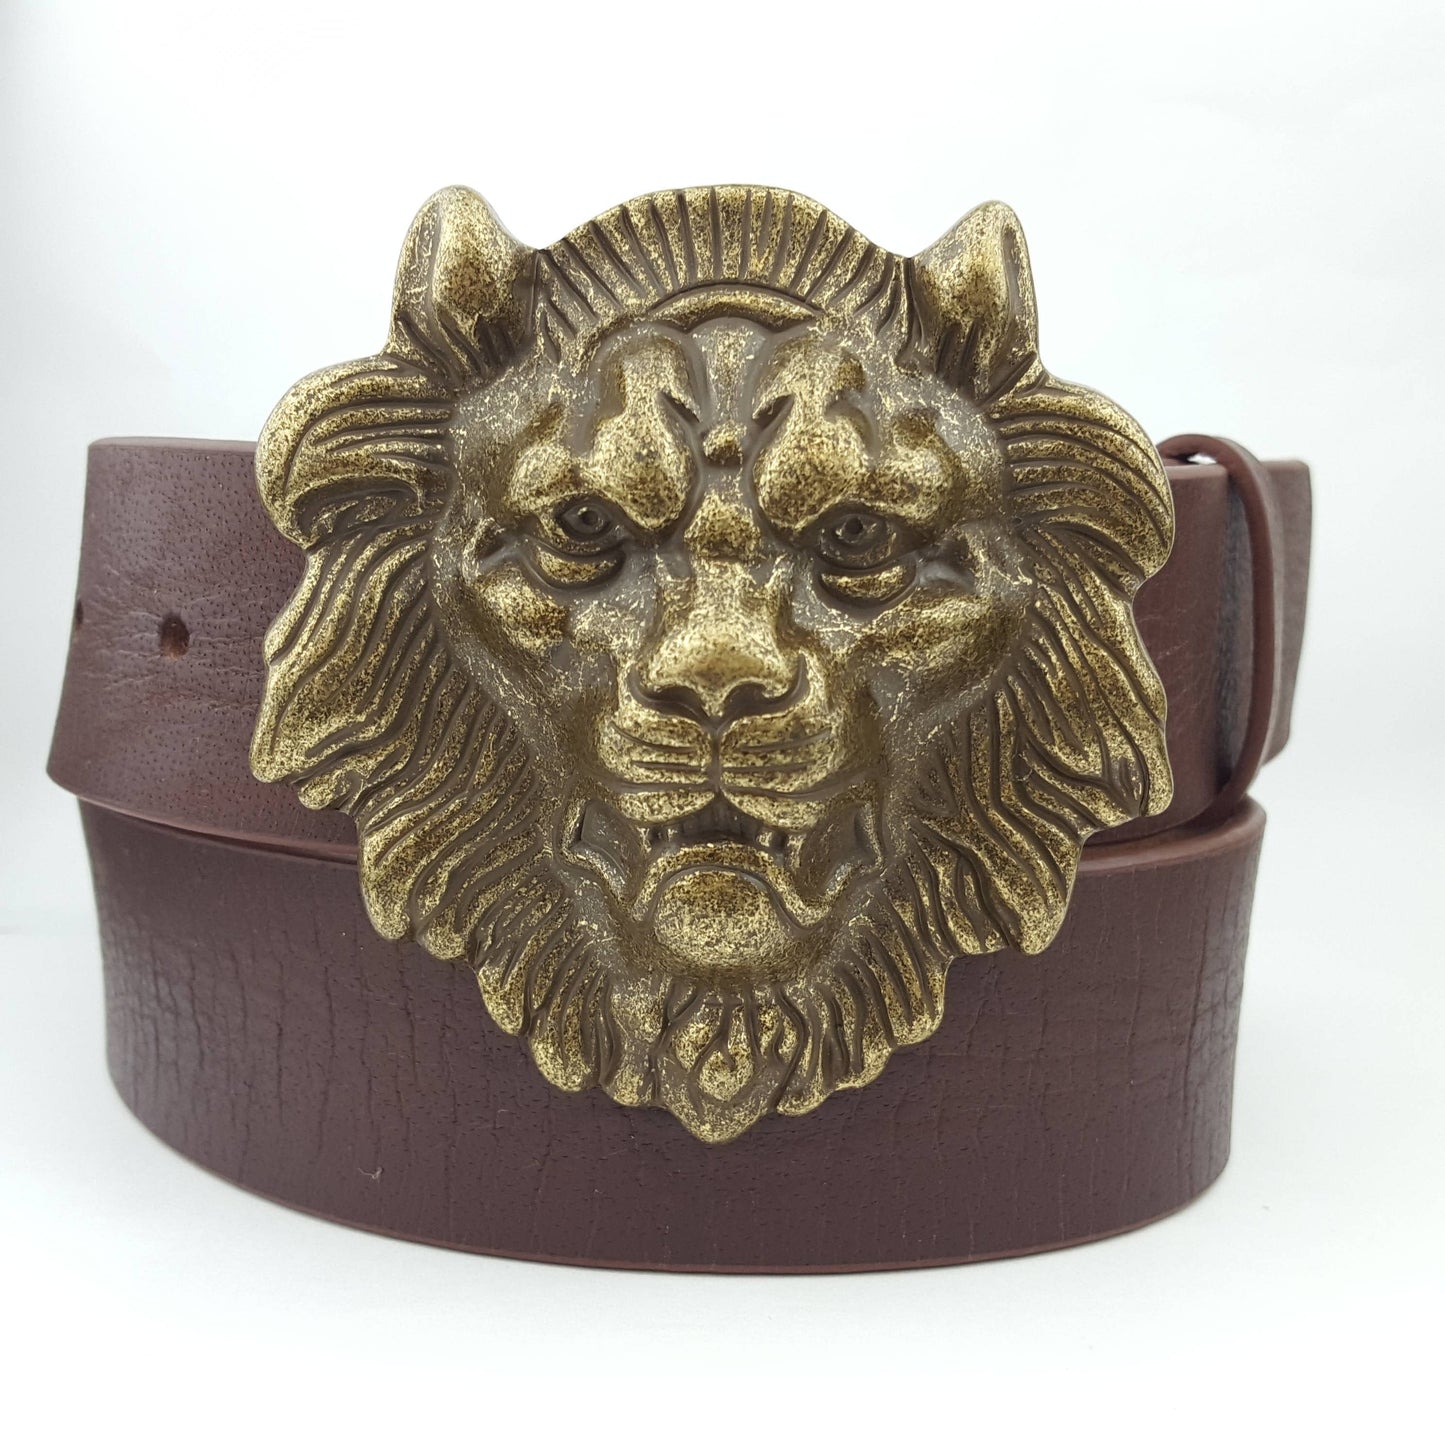 Genuine Leather Lion Belt - Brown/Brass